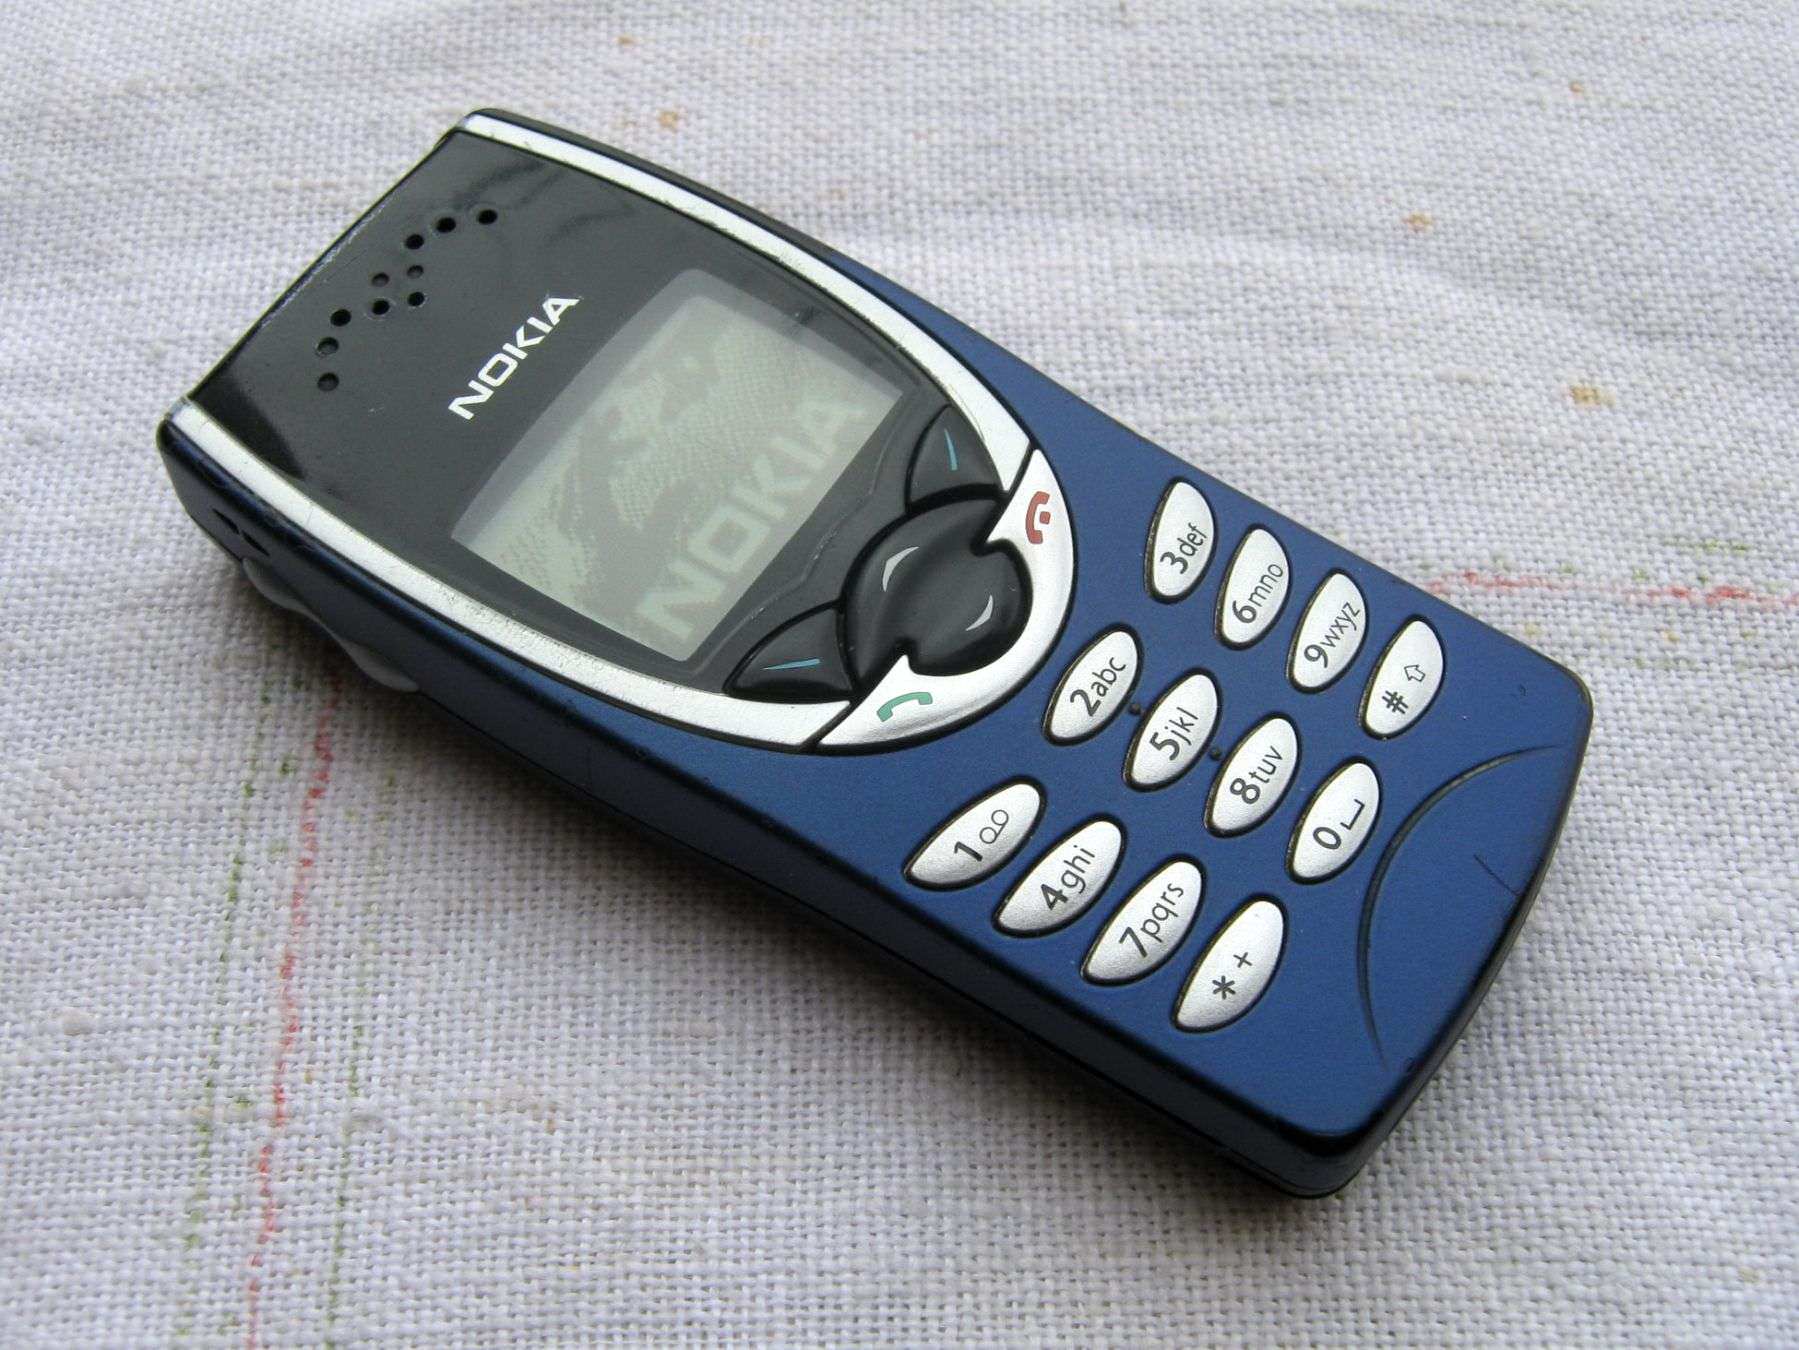 1 телефоны нокиа. Nokia 8210. Нокиа 8210 старый. Nokia 8210 1999. Nokia 8330.